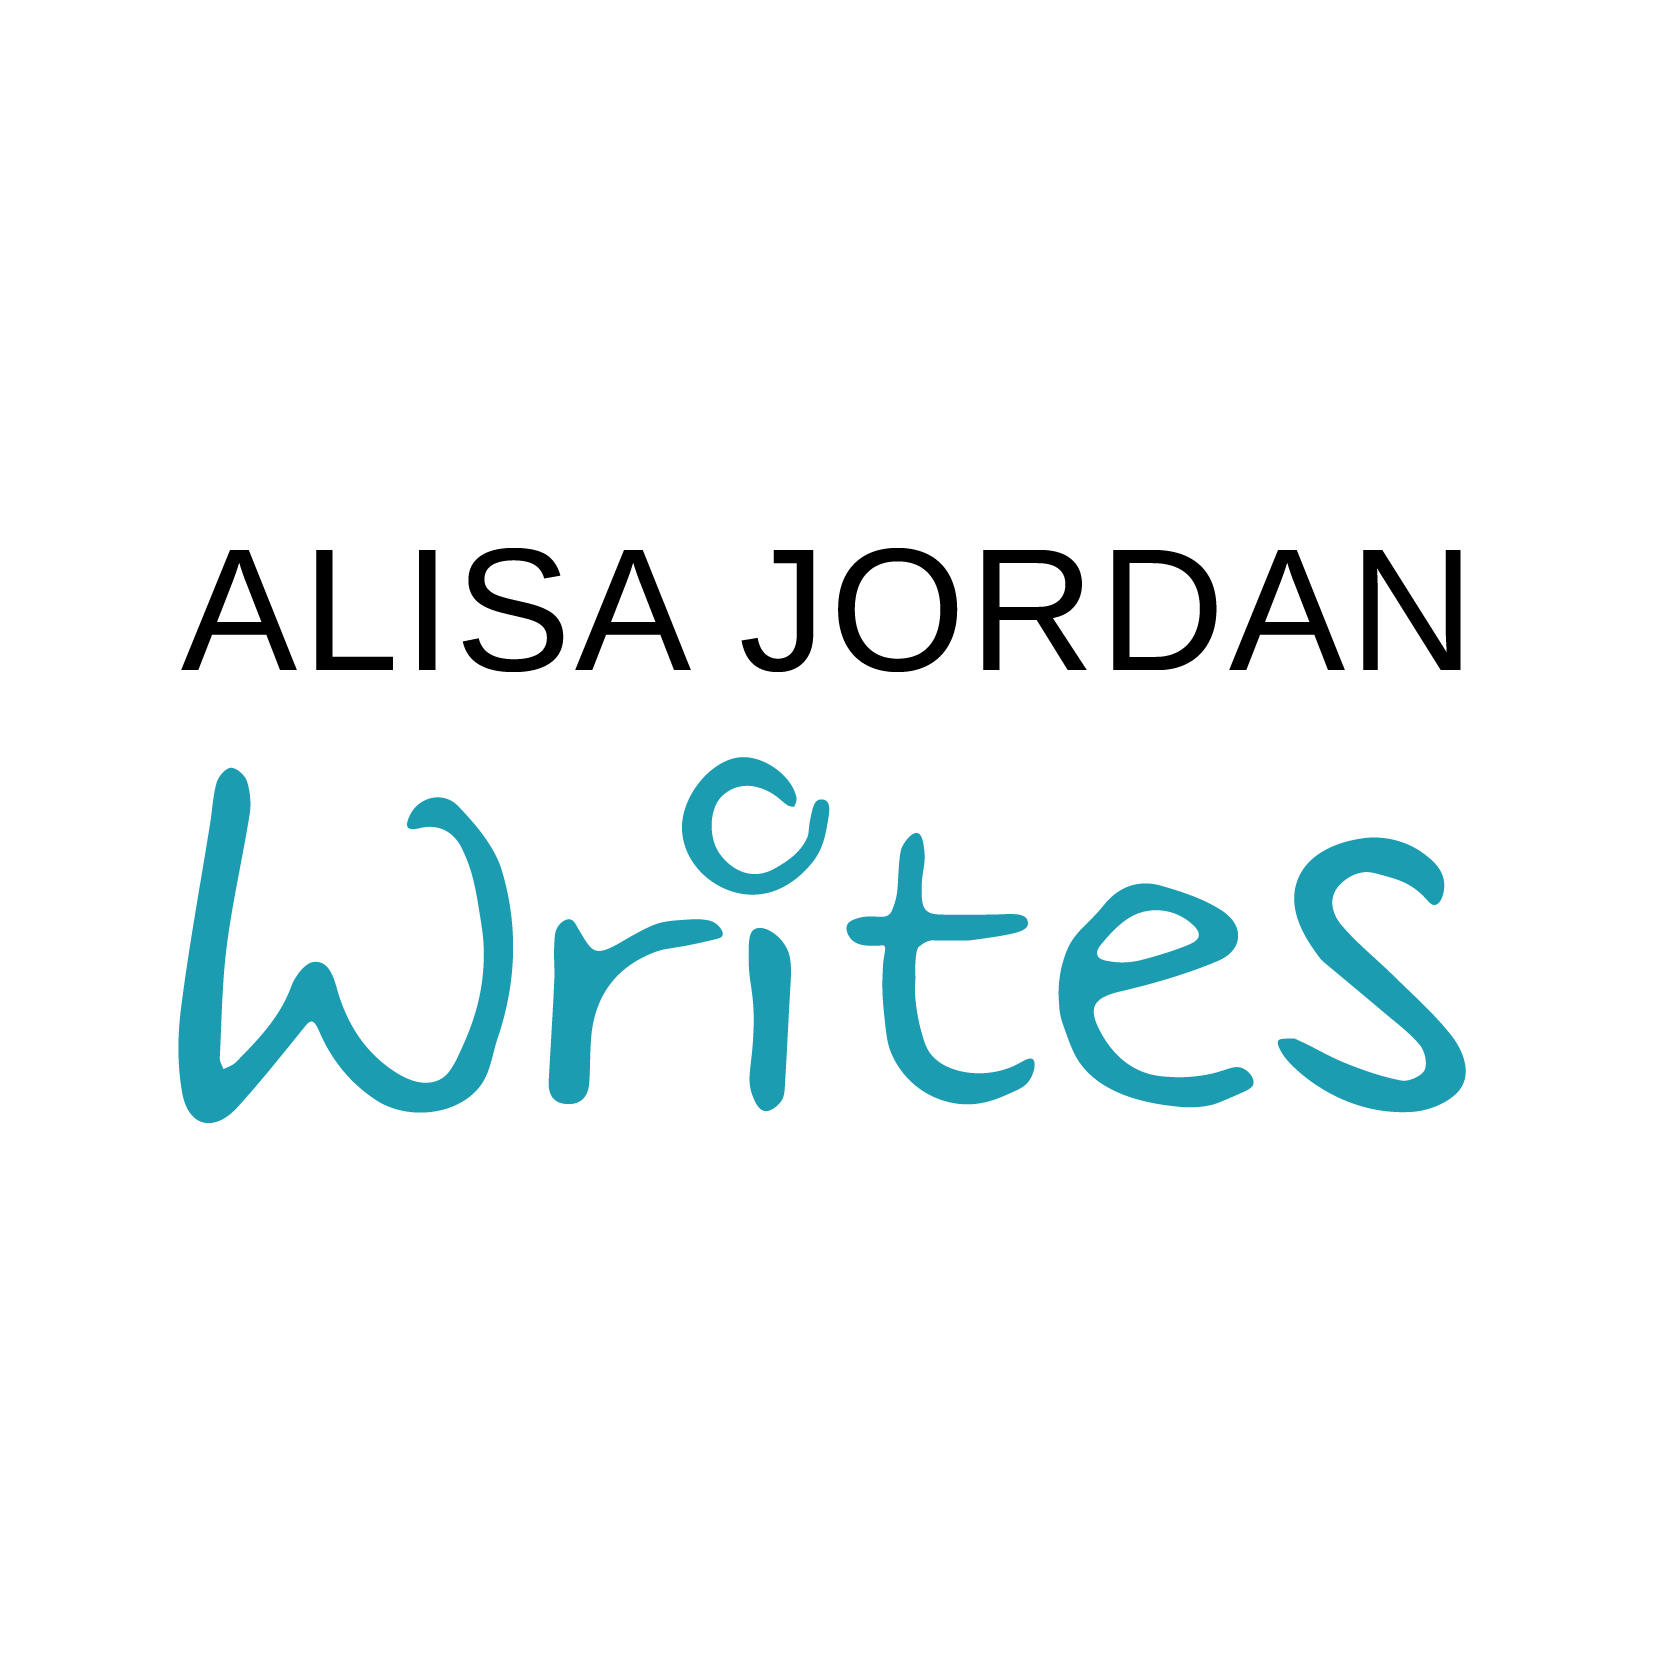 Alisa Jordan Writes